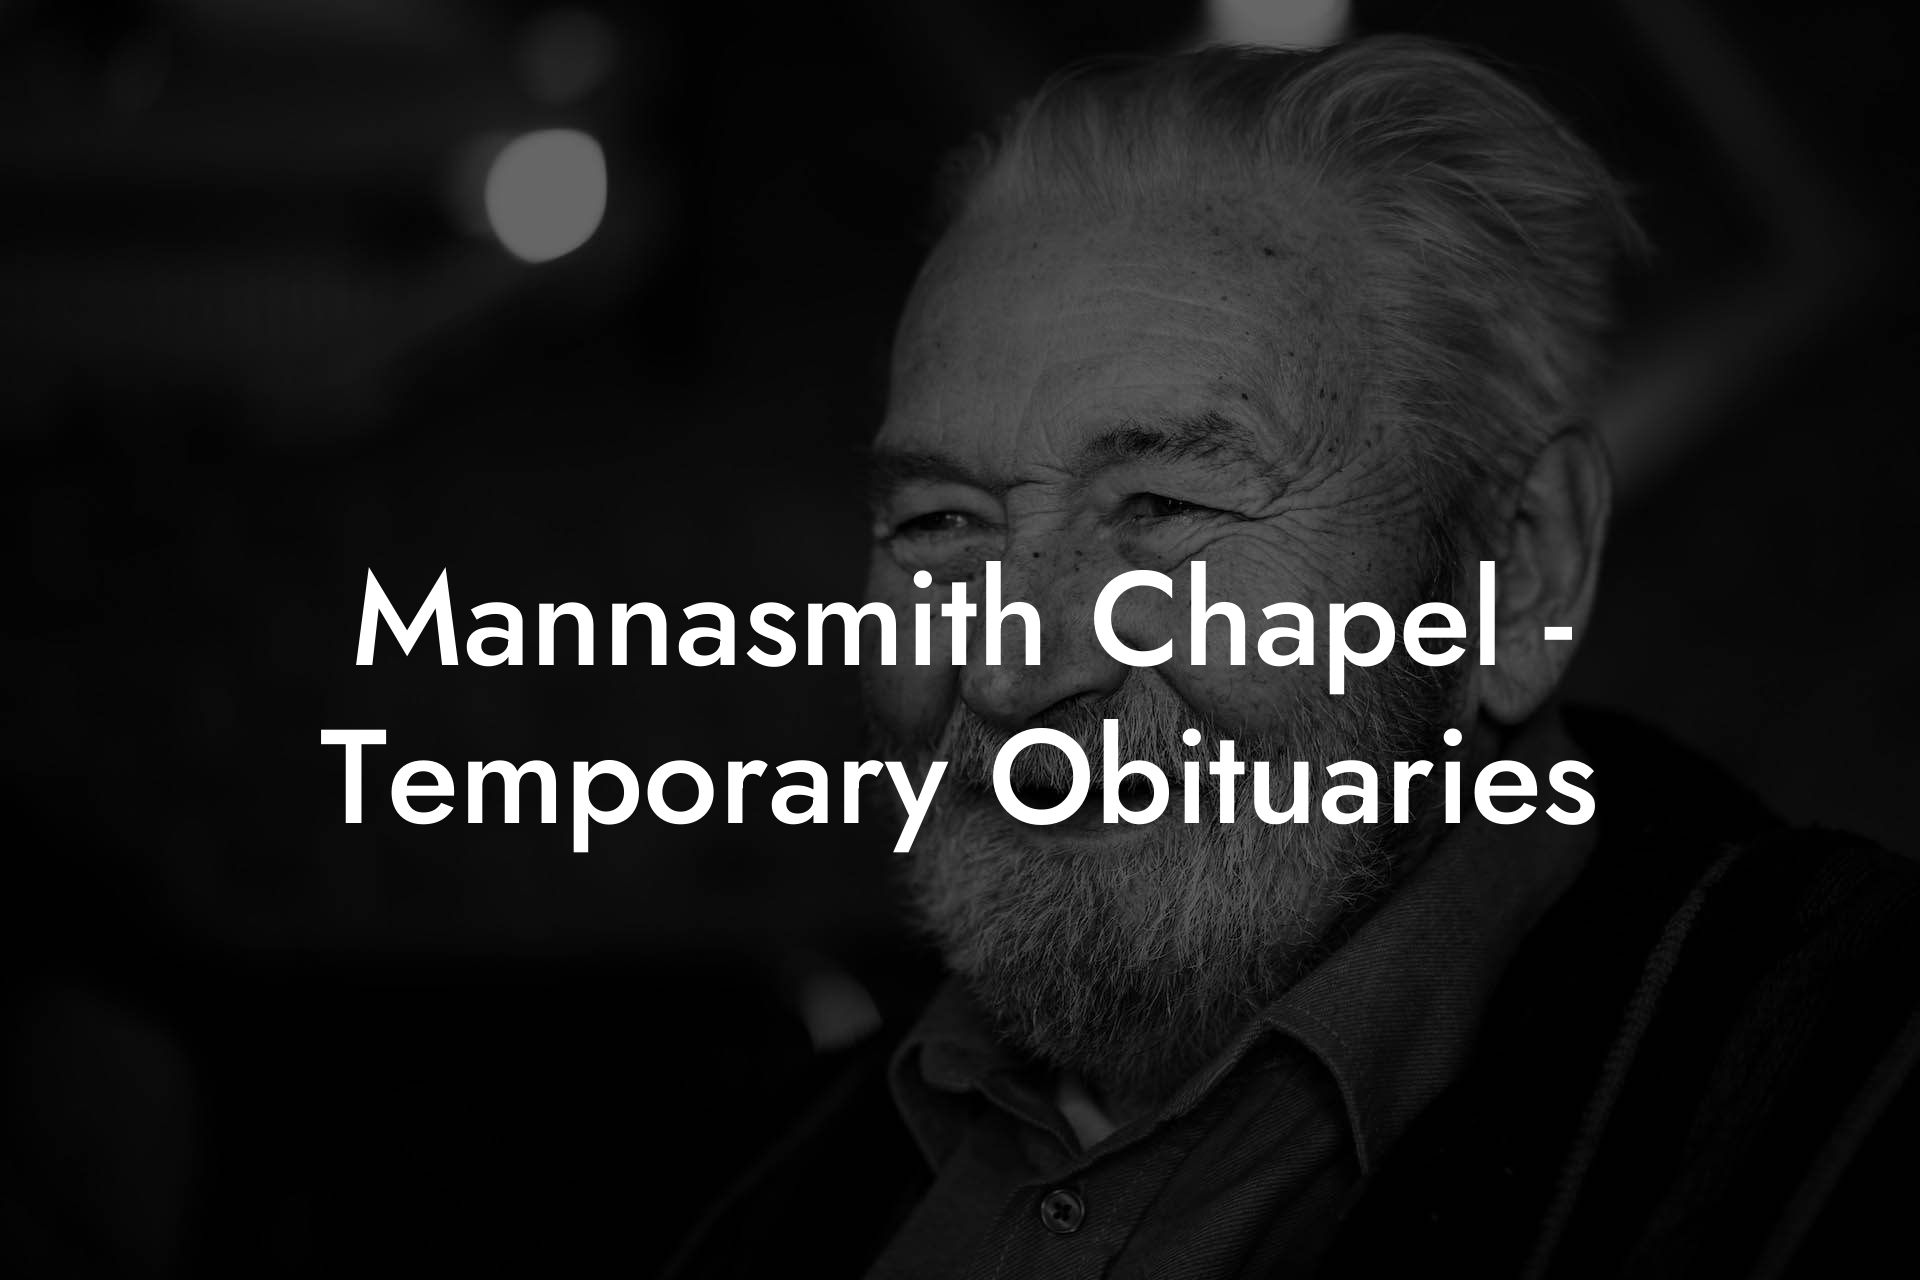 Mannasmith Chapel - Temporary Obituaries